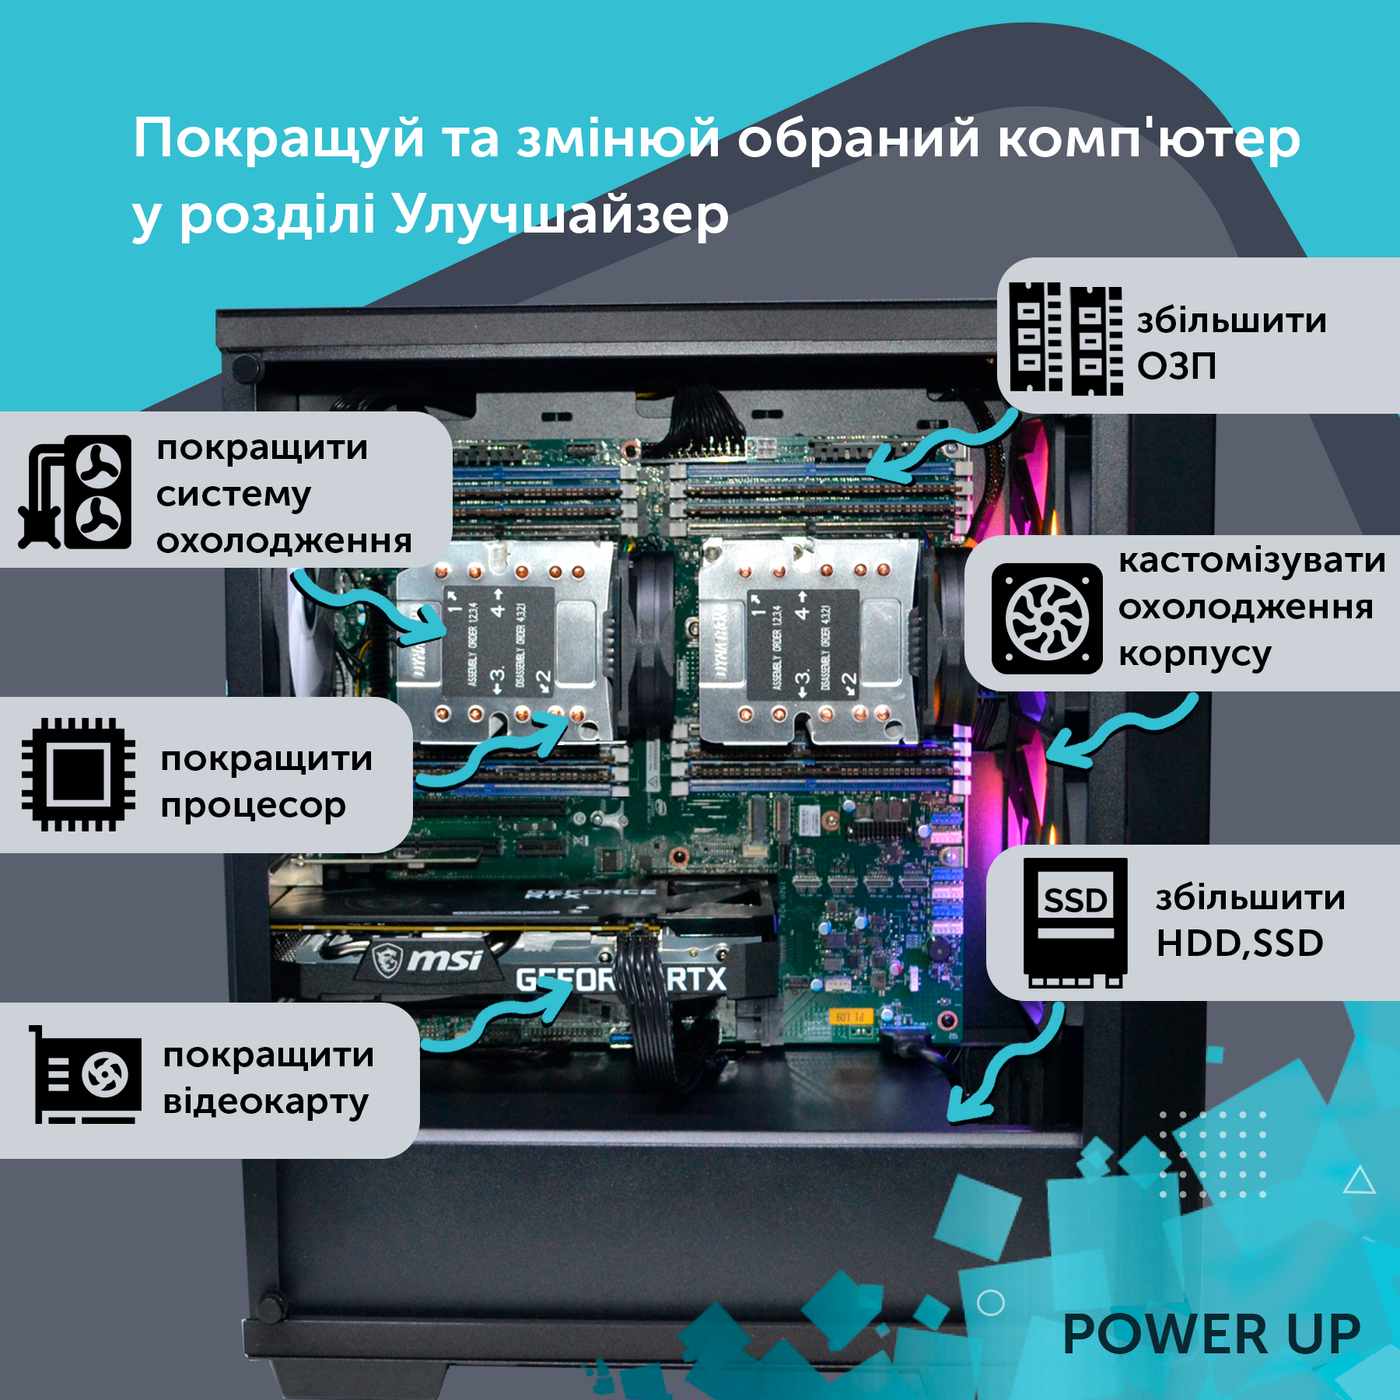 Рабочая станция PowerUp Desktop #136 Ryzen 9 5900x/32 GB/HDD 1 TB/SSD 512GB/GeForce RTX 3070 8GB